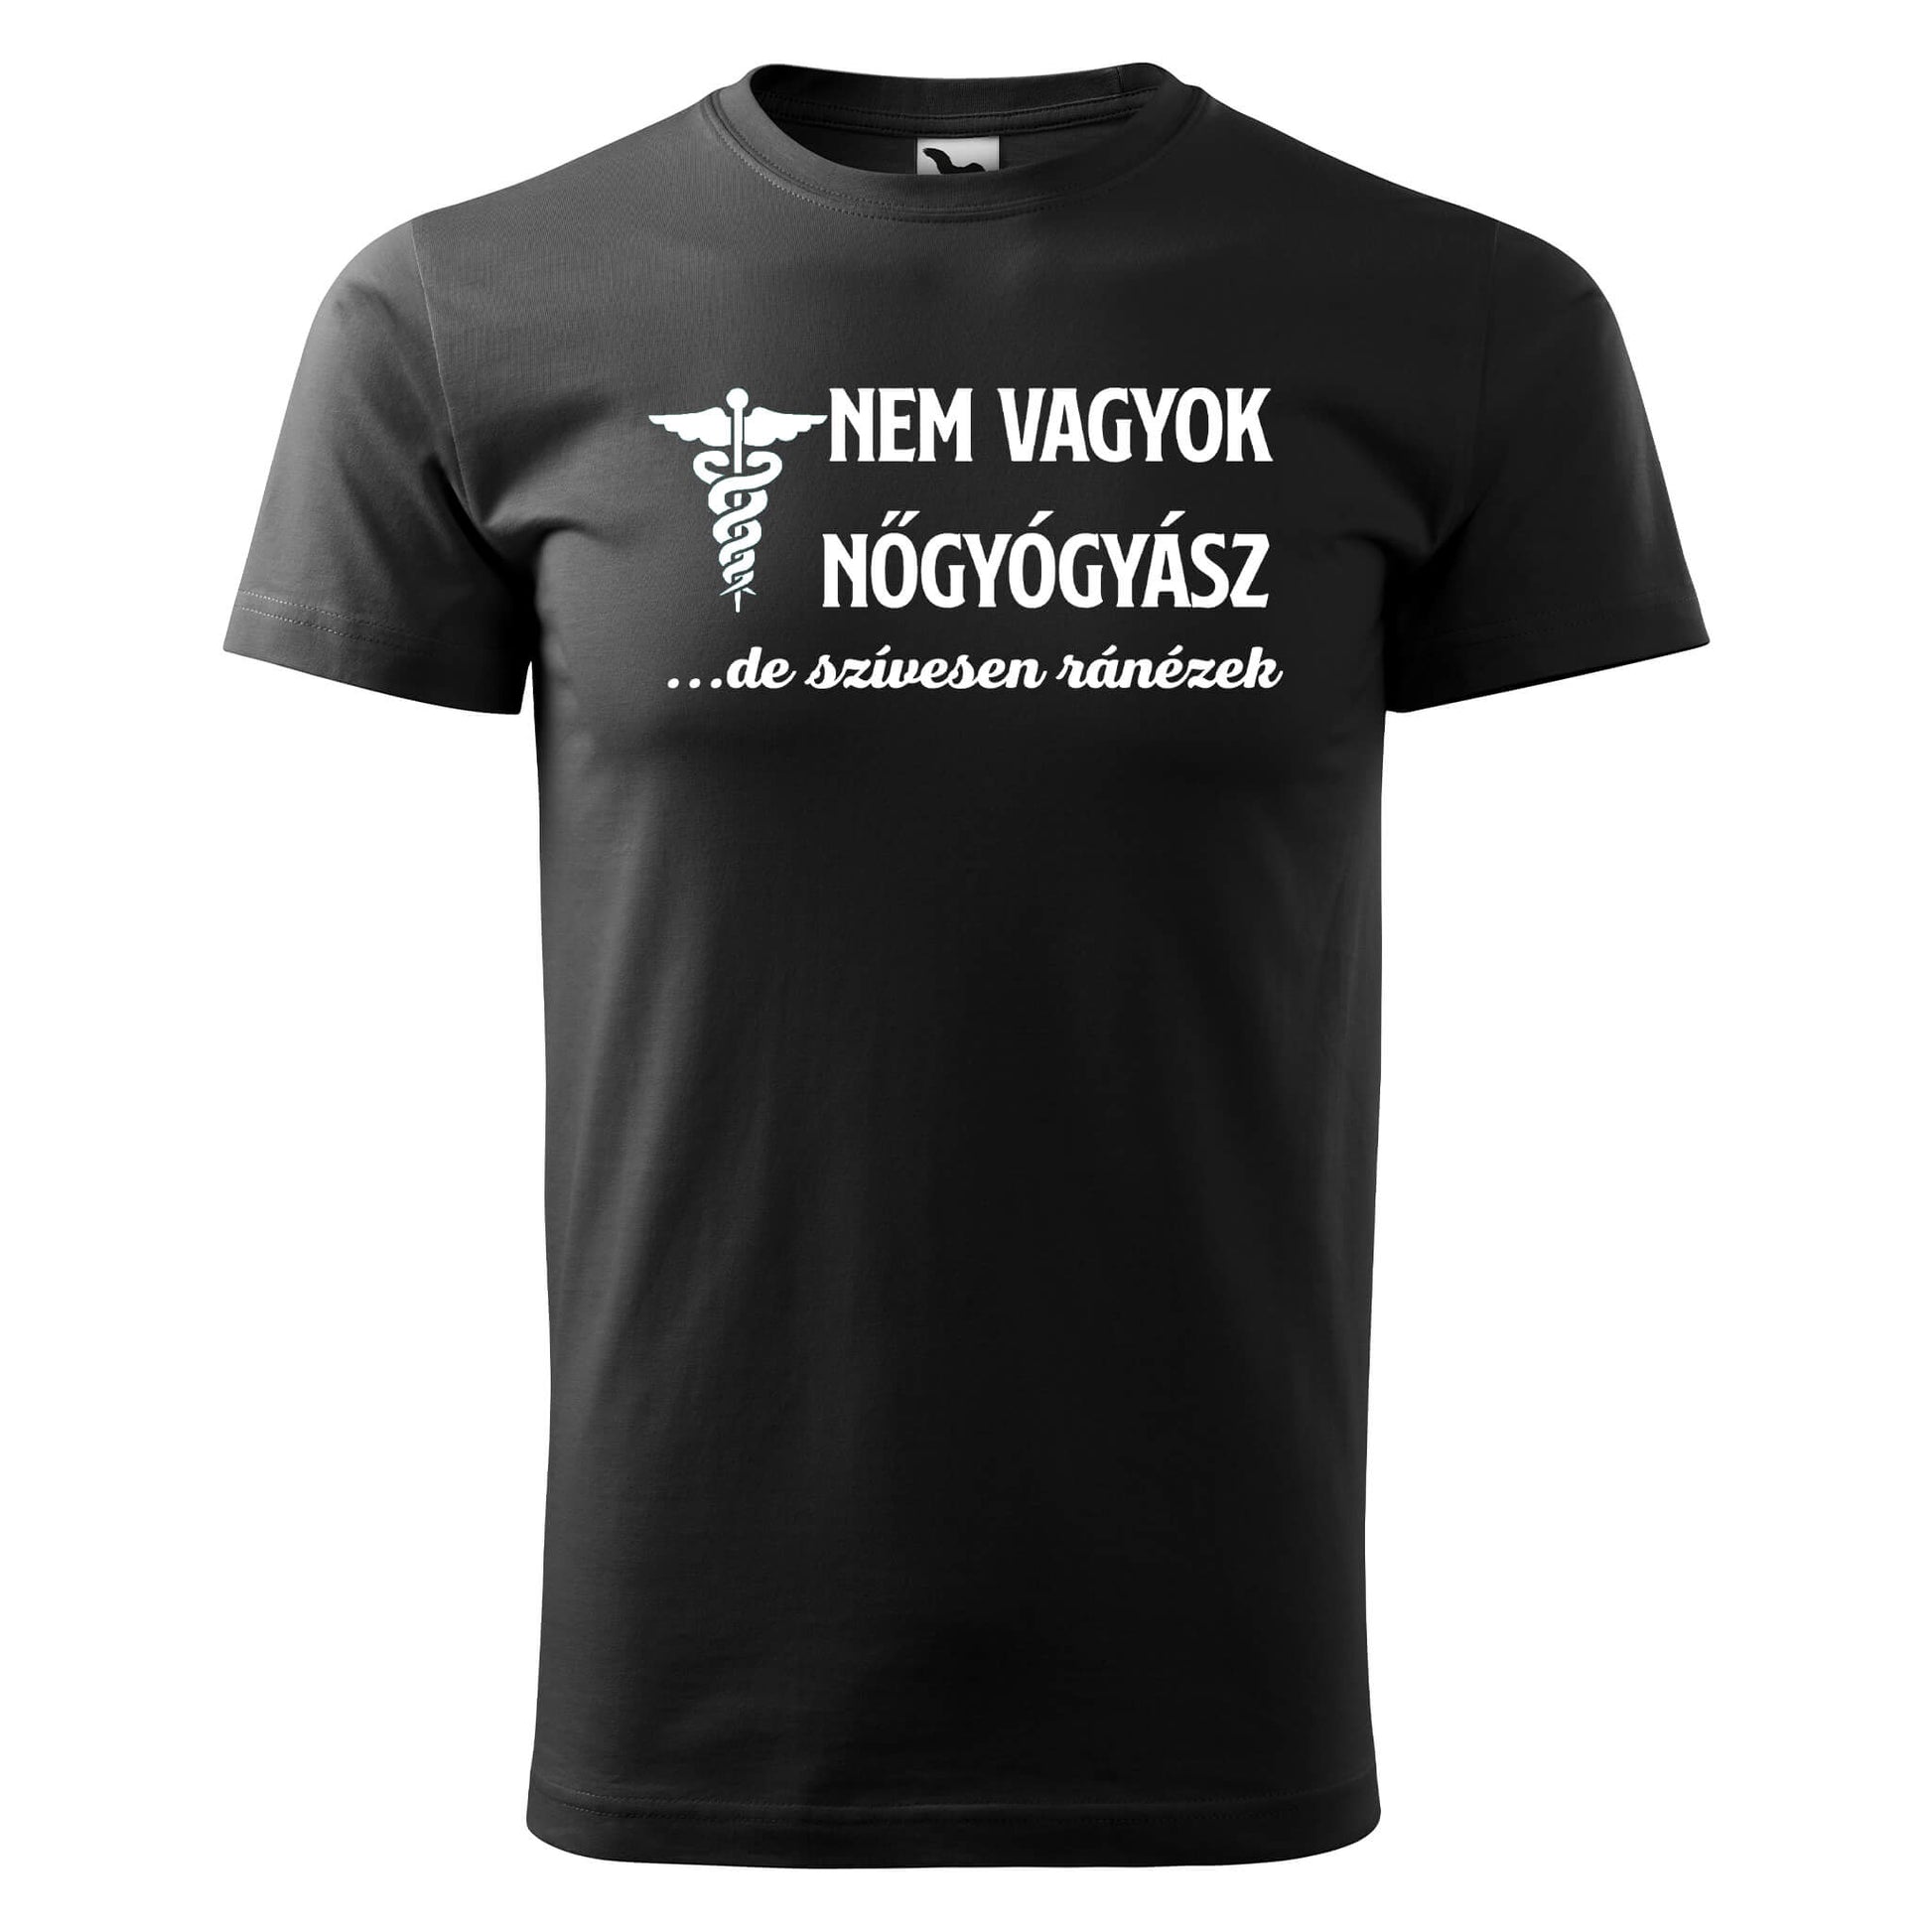 T-shirt - Nem vagyok nőgyógyász - rvdesignprint